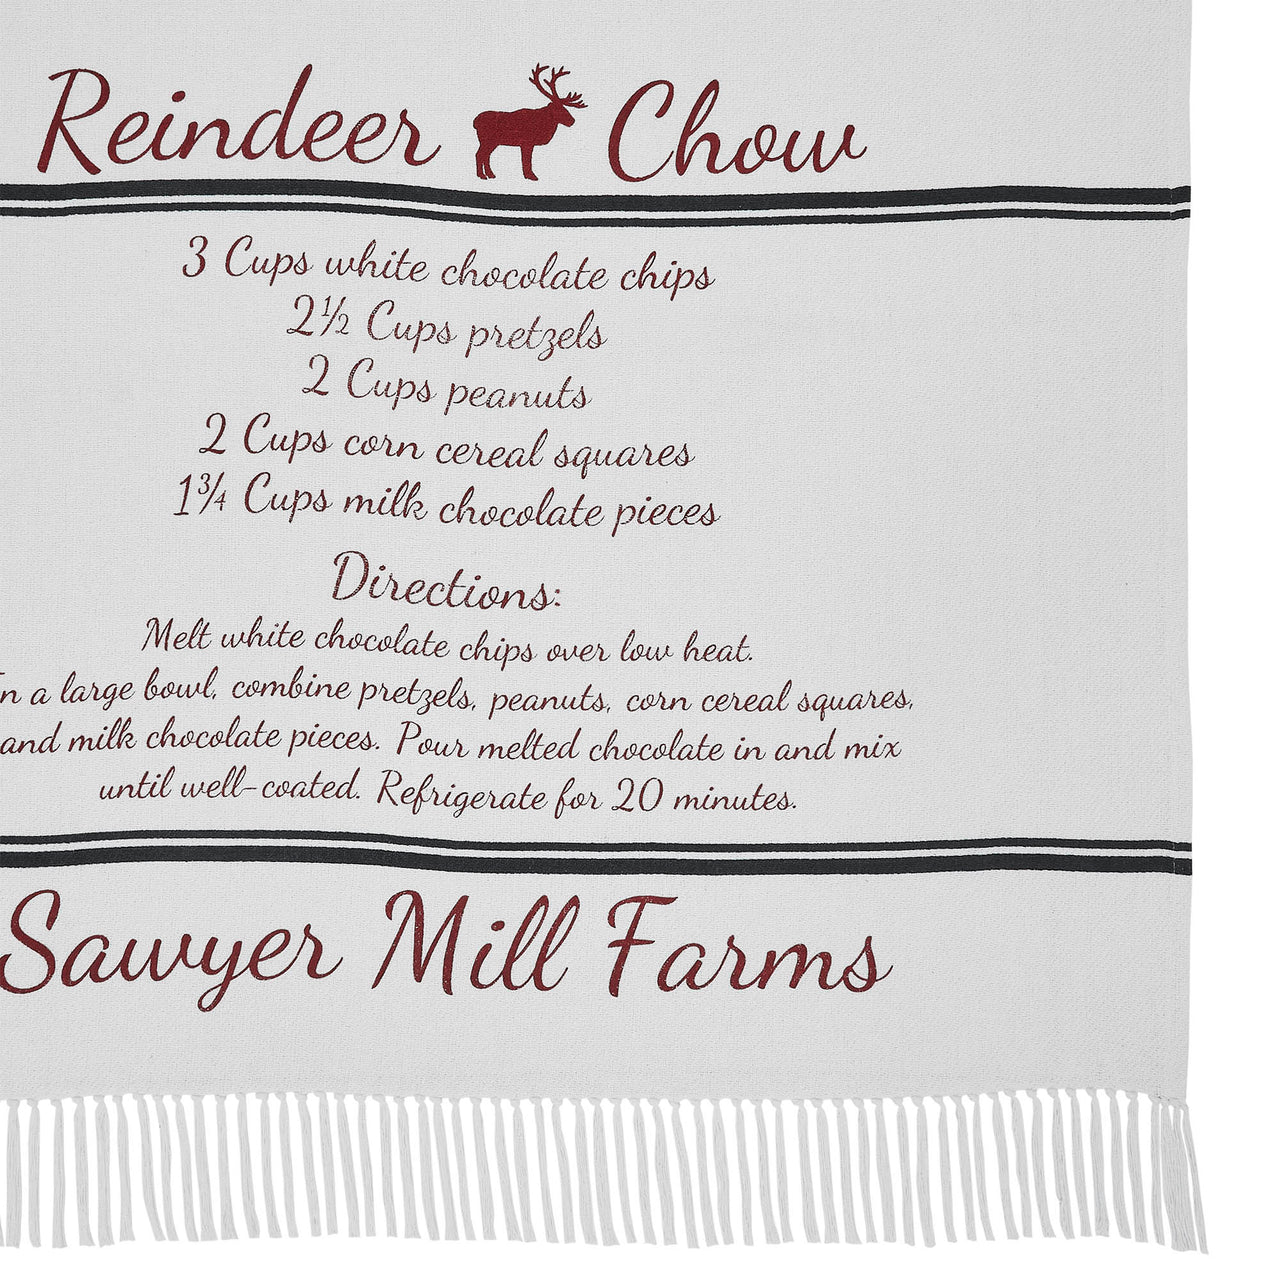 Sawyer Mill Reindeer Chow Woven Throw 60" x 50" VHC Brands